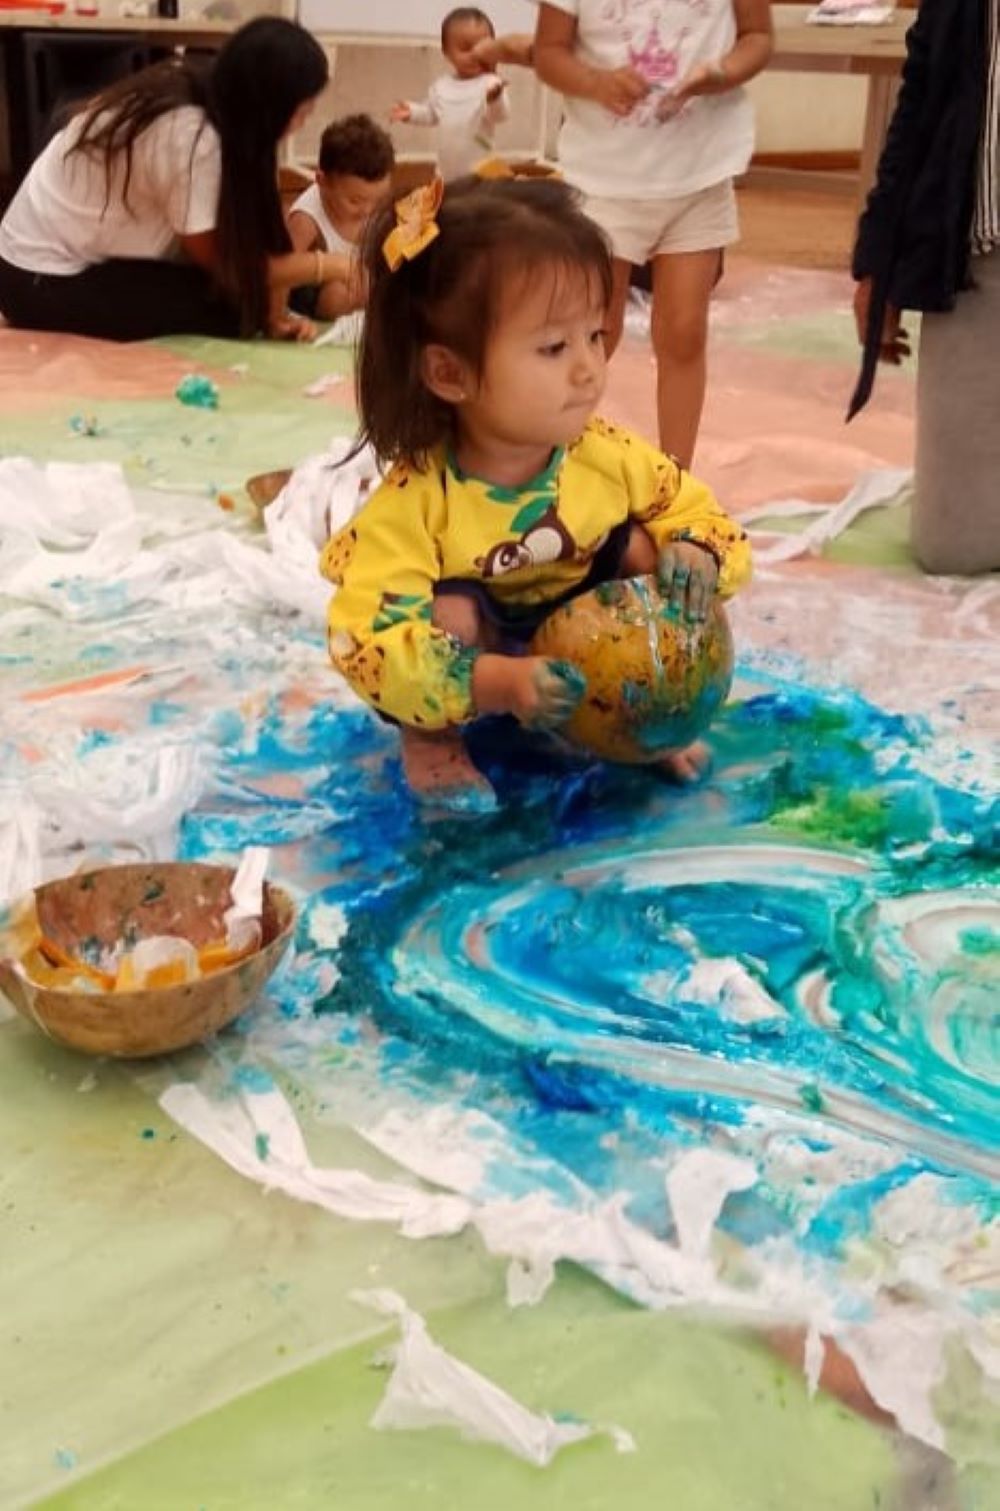 niña jugando con pintura azul sobre el suelo